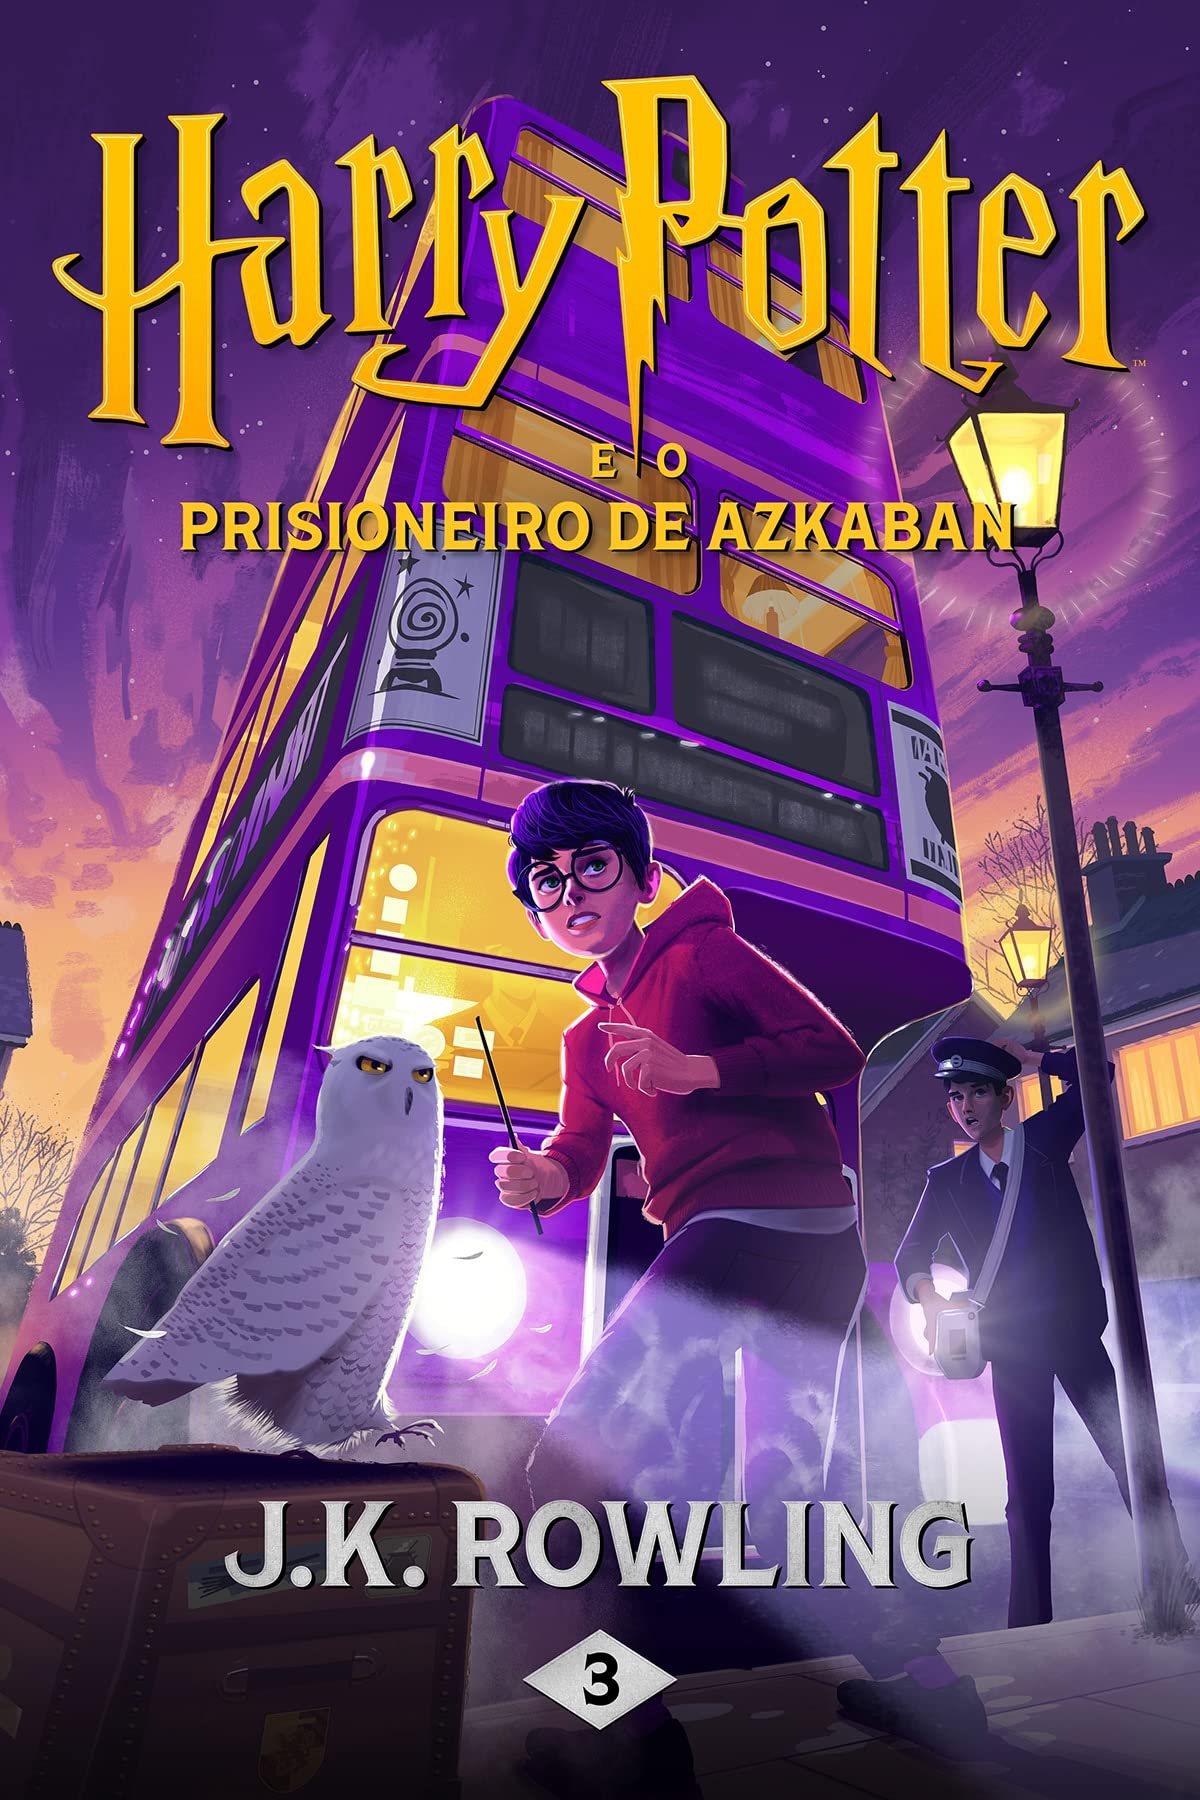 Harry Potter e o prisioneiro de Azkaban (Portuguese Edition)